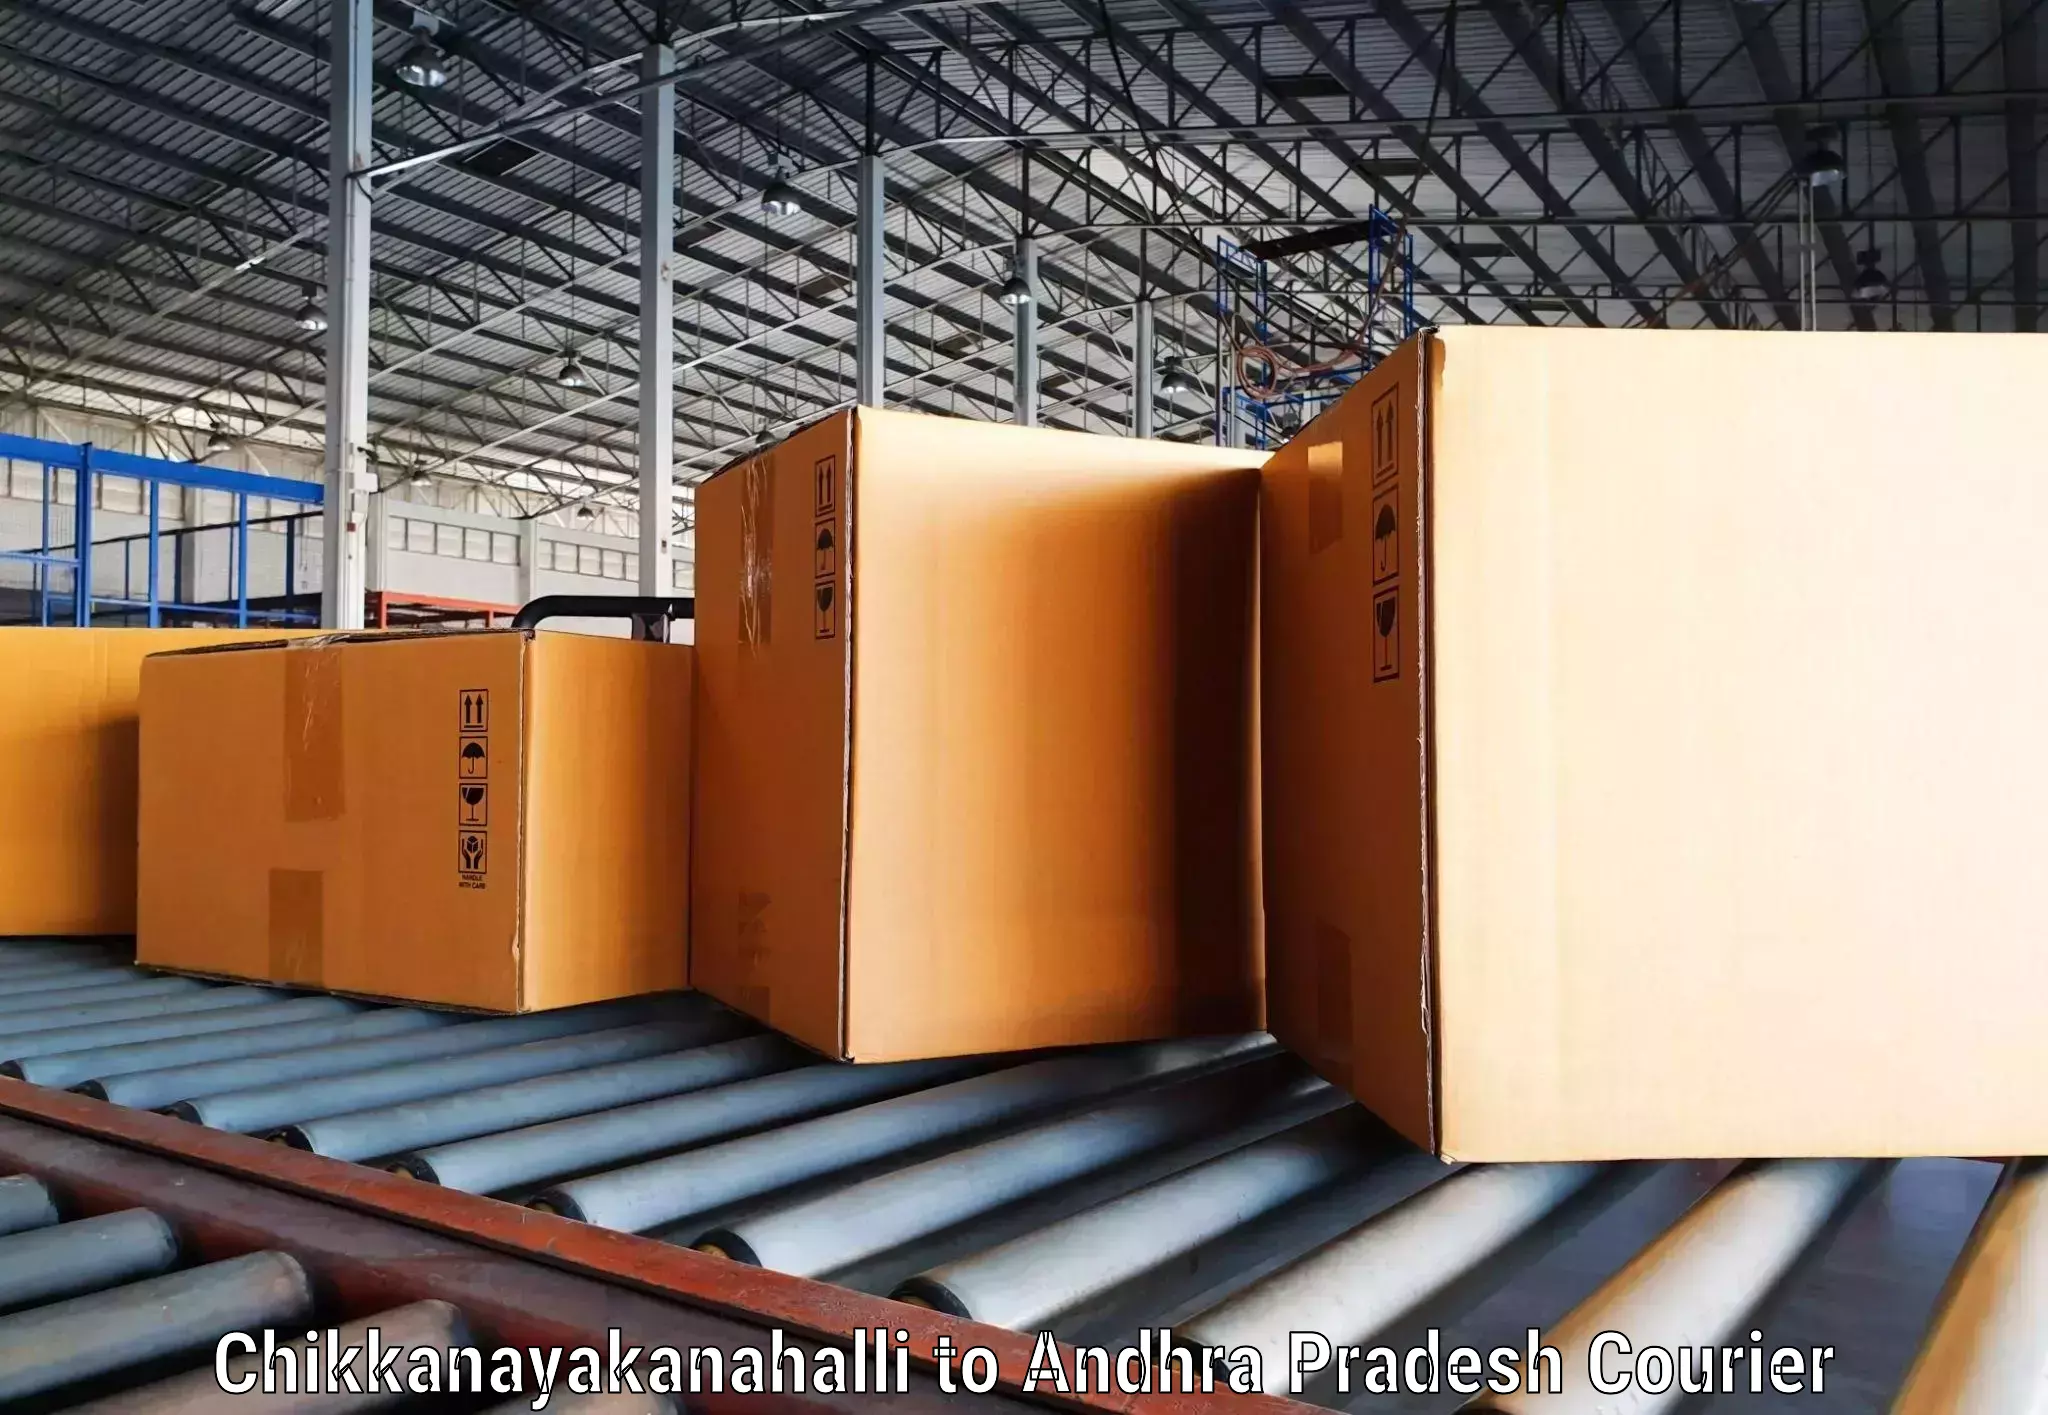 Fast-track shipping solutions Chikkanayakanahalli to Sydapuram